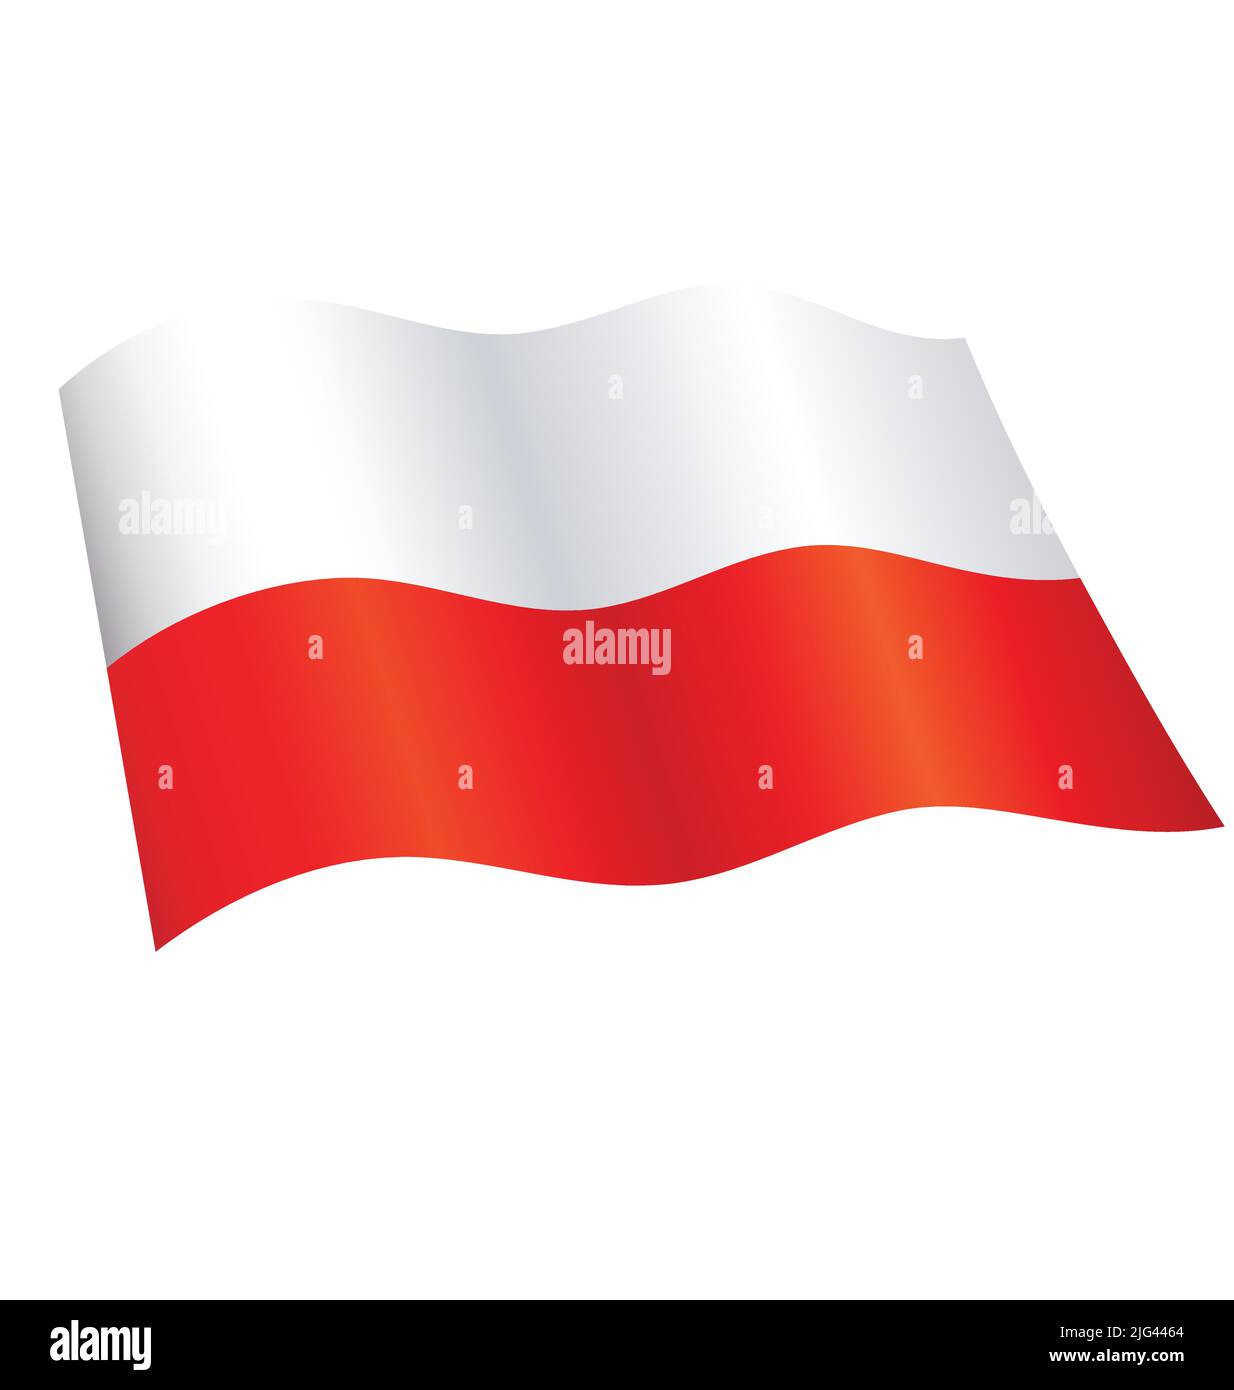 Drapeau polonais de la Pologne volant en agitant fluide vecteur de soie isolée sur fond blanc Illustration de Vecteur